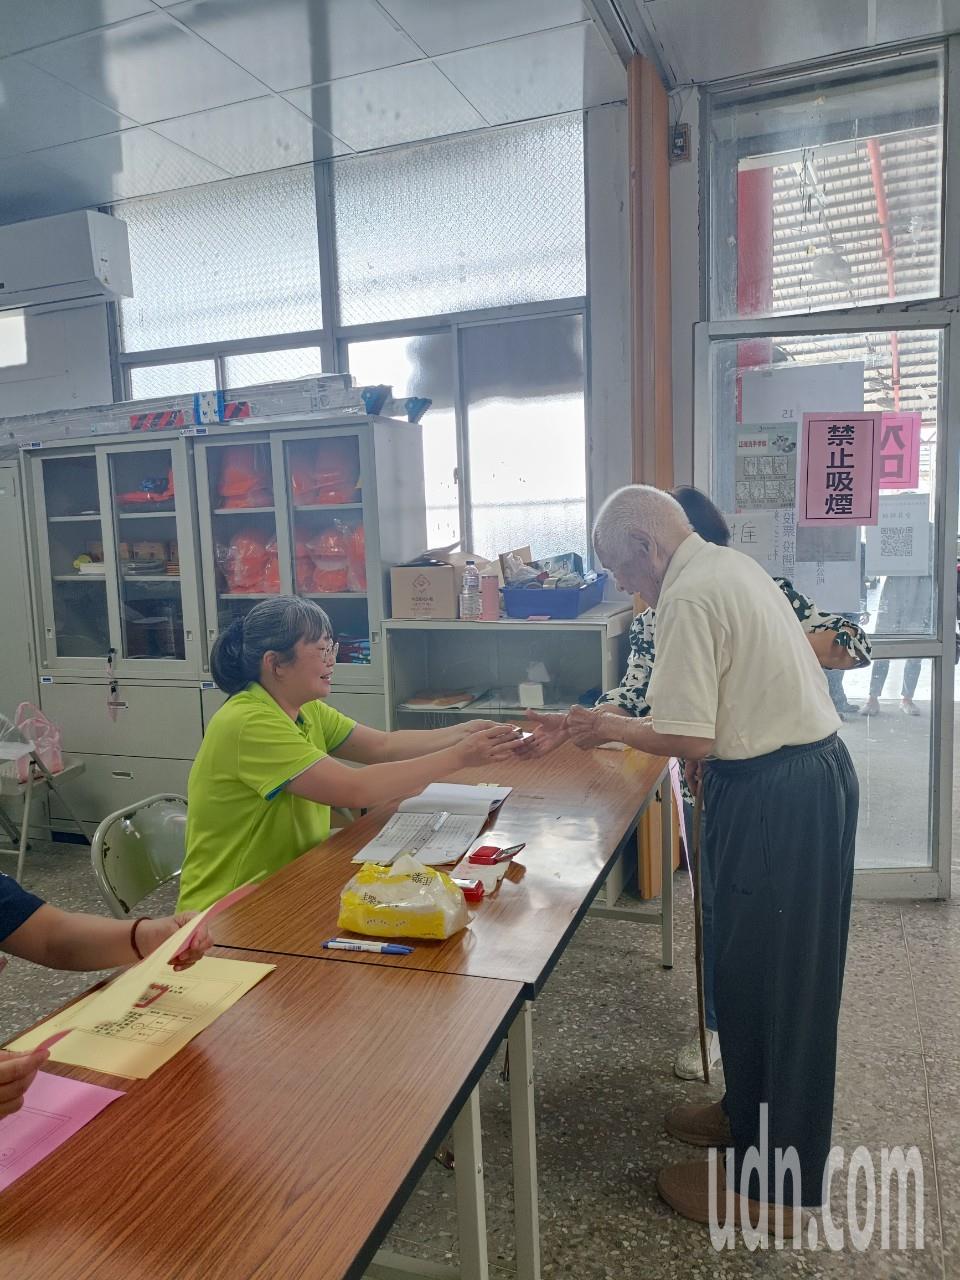 百岁人瑞陈老先生，也坚持投票。他说「不希望走了，自己的土地不清不楚」对祖先和后世才有交代。记者尤聪光／摄影